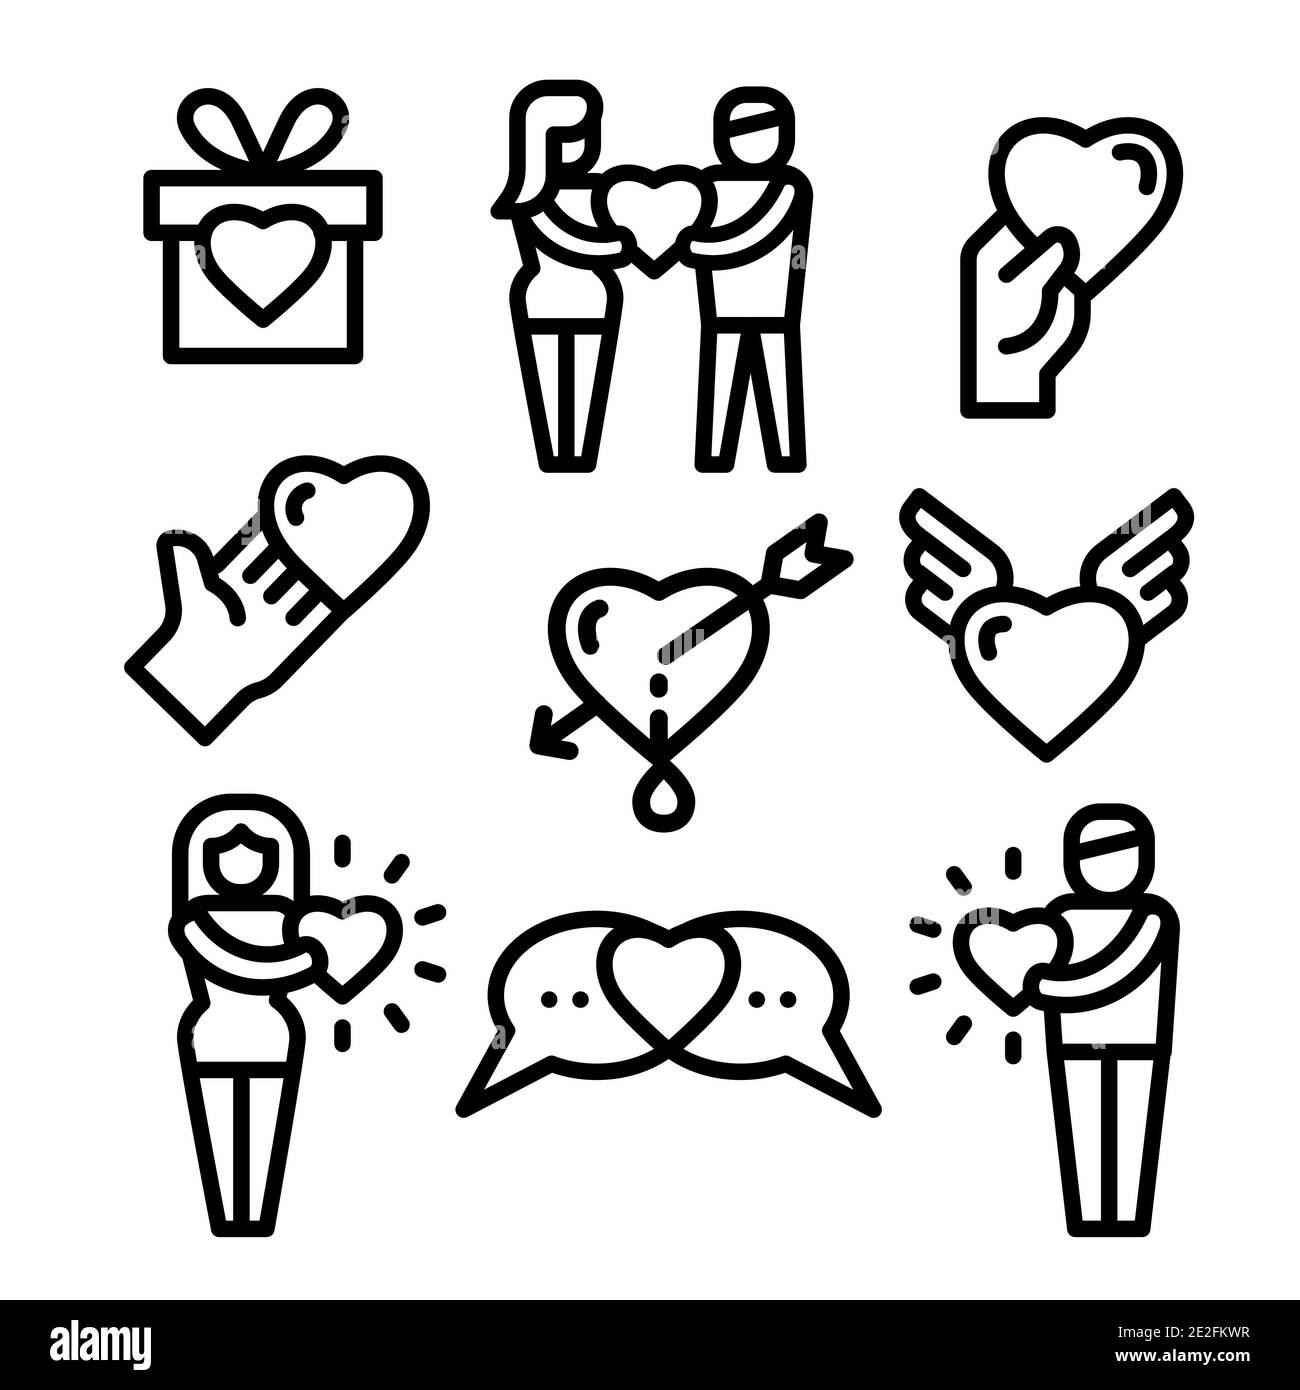 Insieme lineare delle icone dell'amicizia e dell'amore Illustrazione Vettoriale